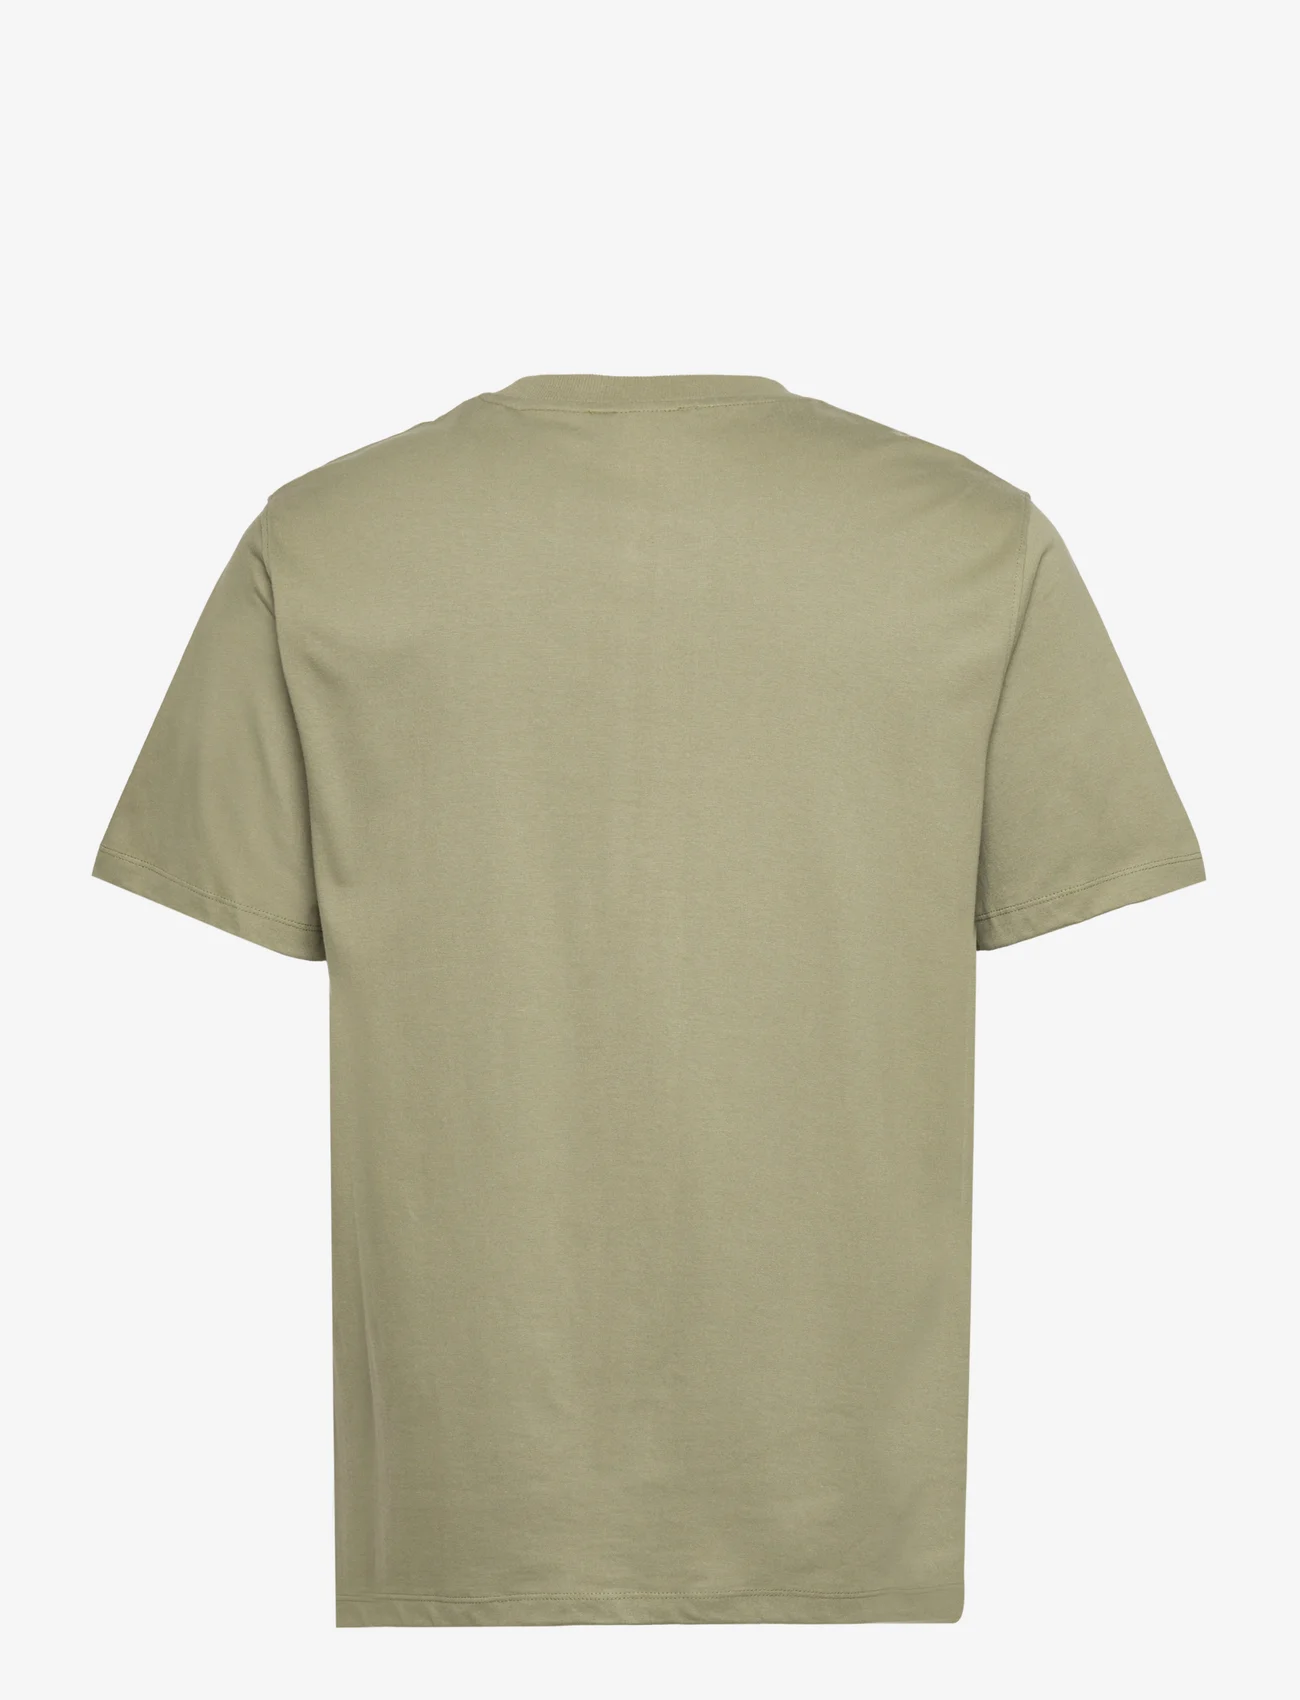 Les Deux - Donovan T-shirt - kurzärmelige - dusty moss/ivory - 1